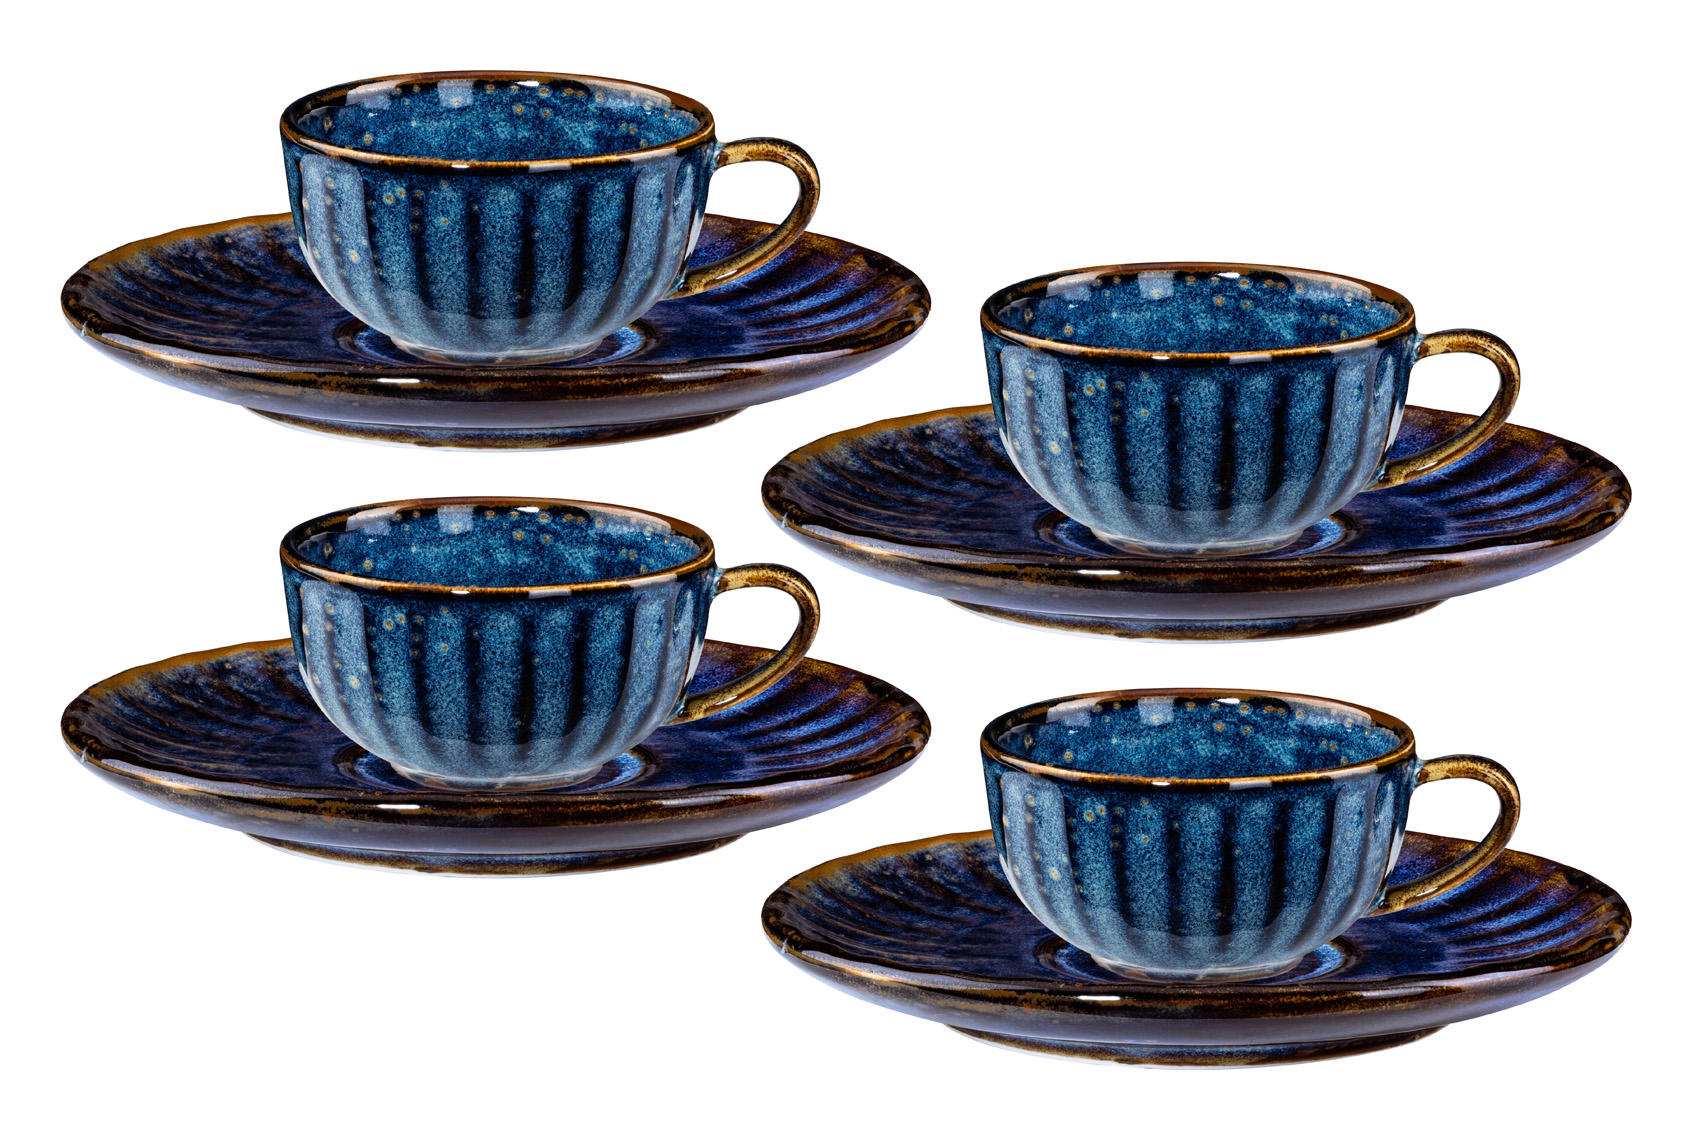 Cup with saucer kpl. 4 pcs. Deep Blue